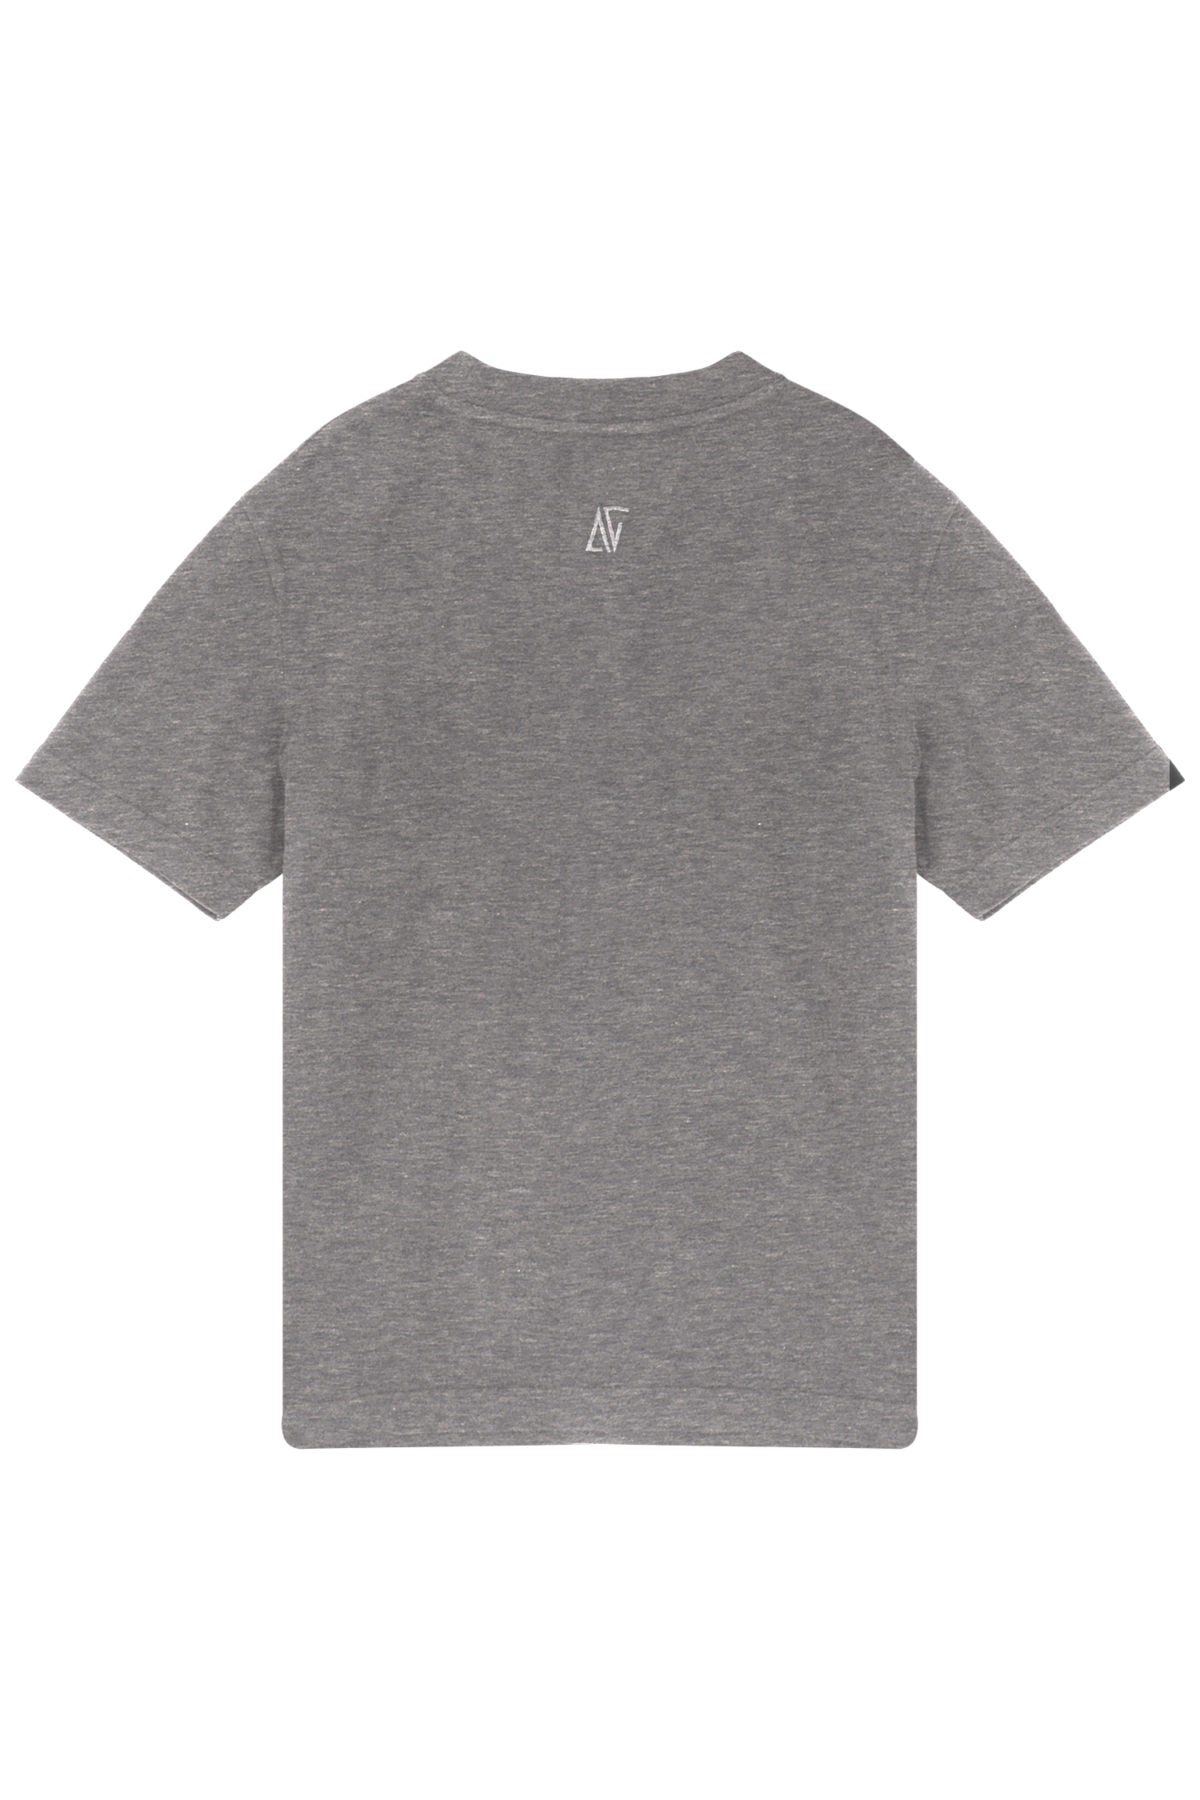 Basic T-Shirt  - Gri